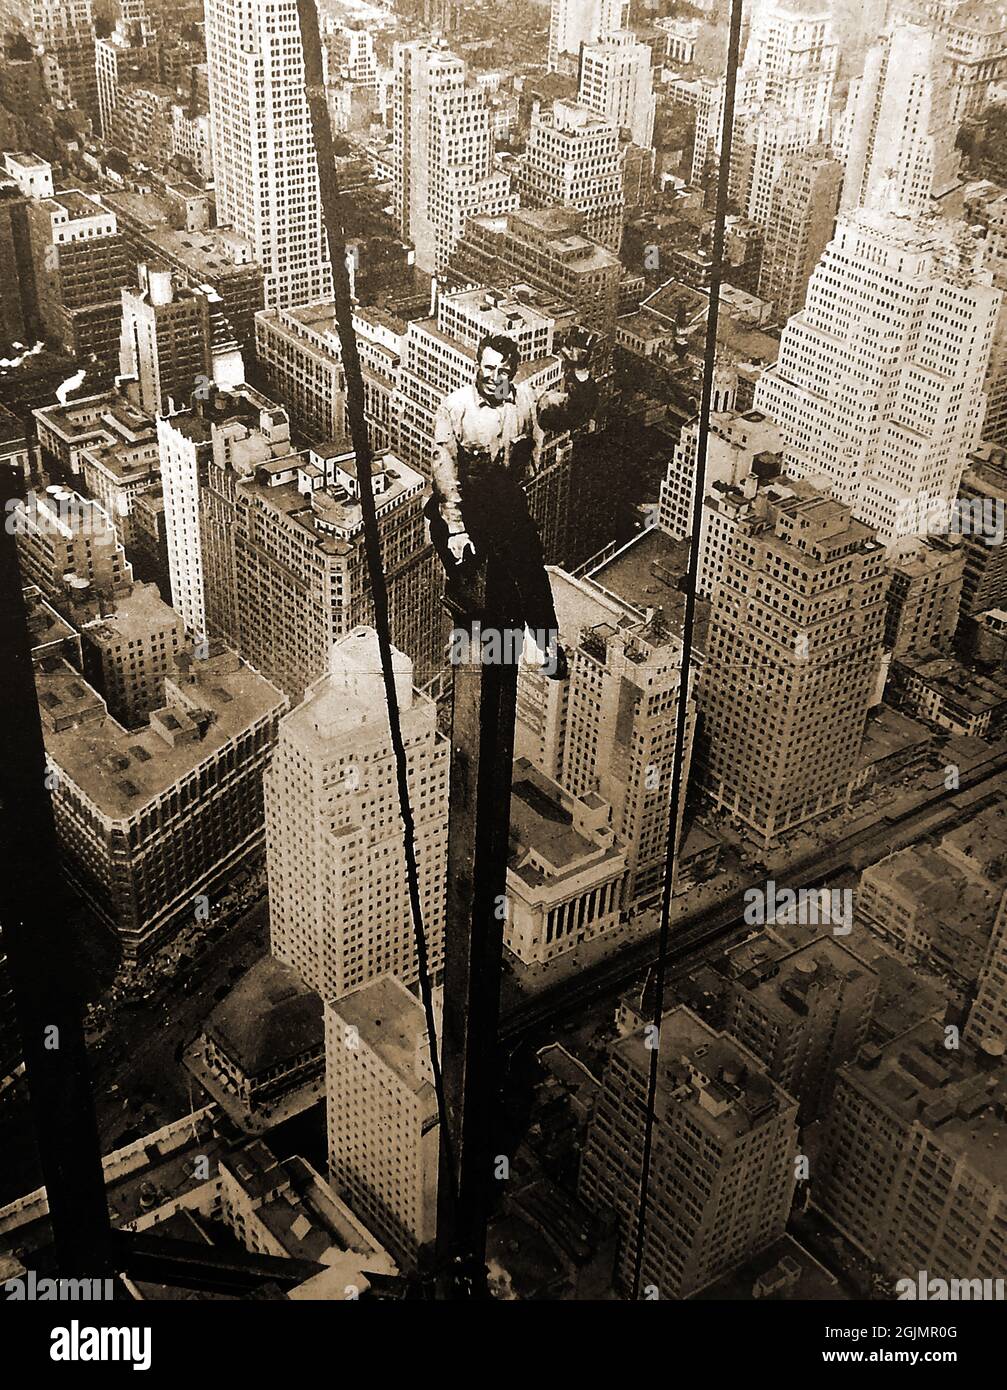 Carl Russel, trabajador de la década de 1930, fotografió durante la  construcción del piso 85th del Empire State Building sentado en una viga  vertical sin ningún tipo de seguridad. El rascacielos art